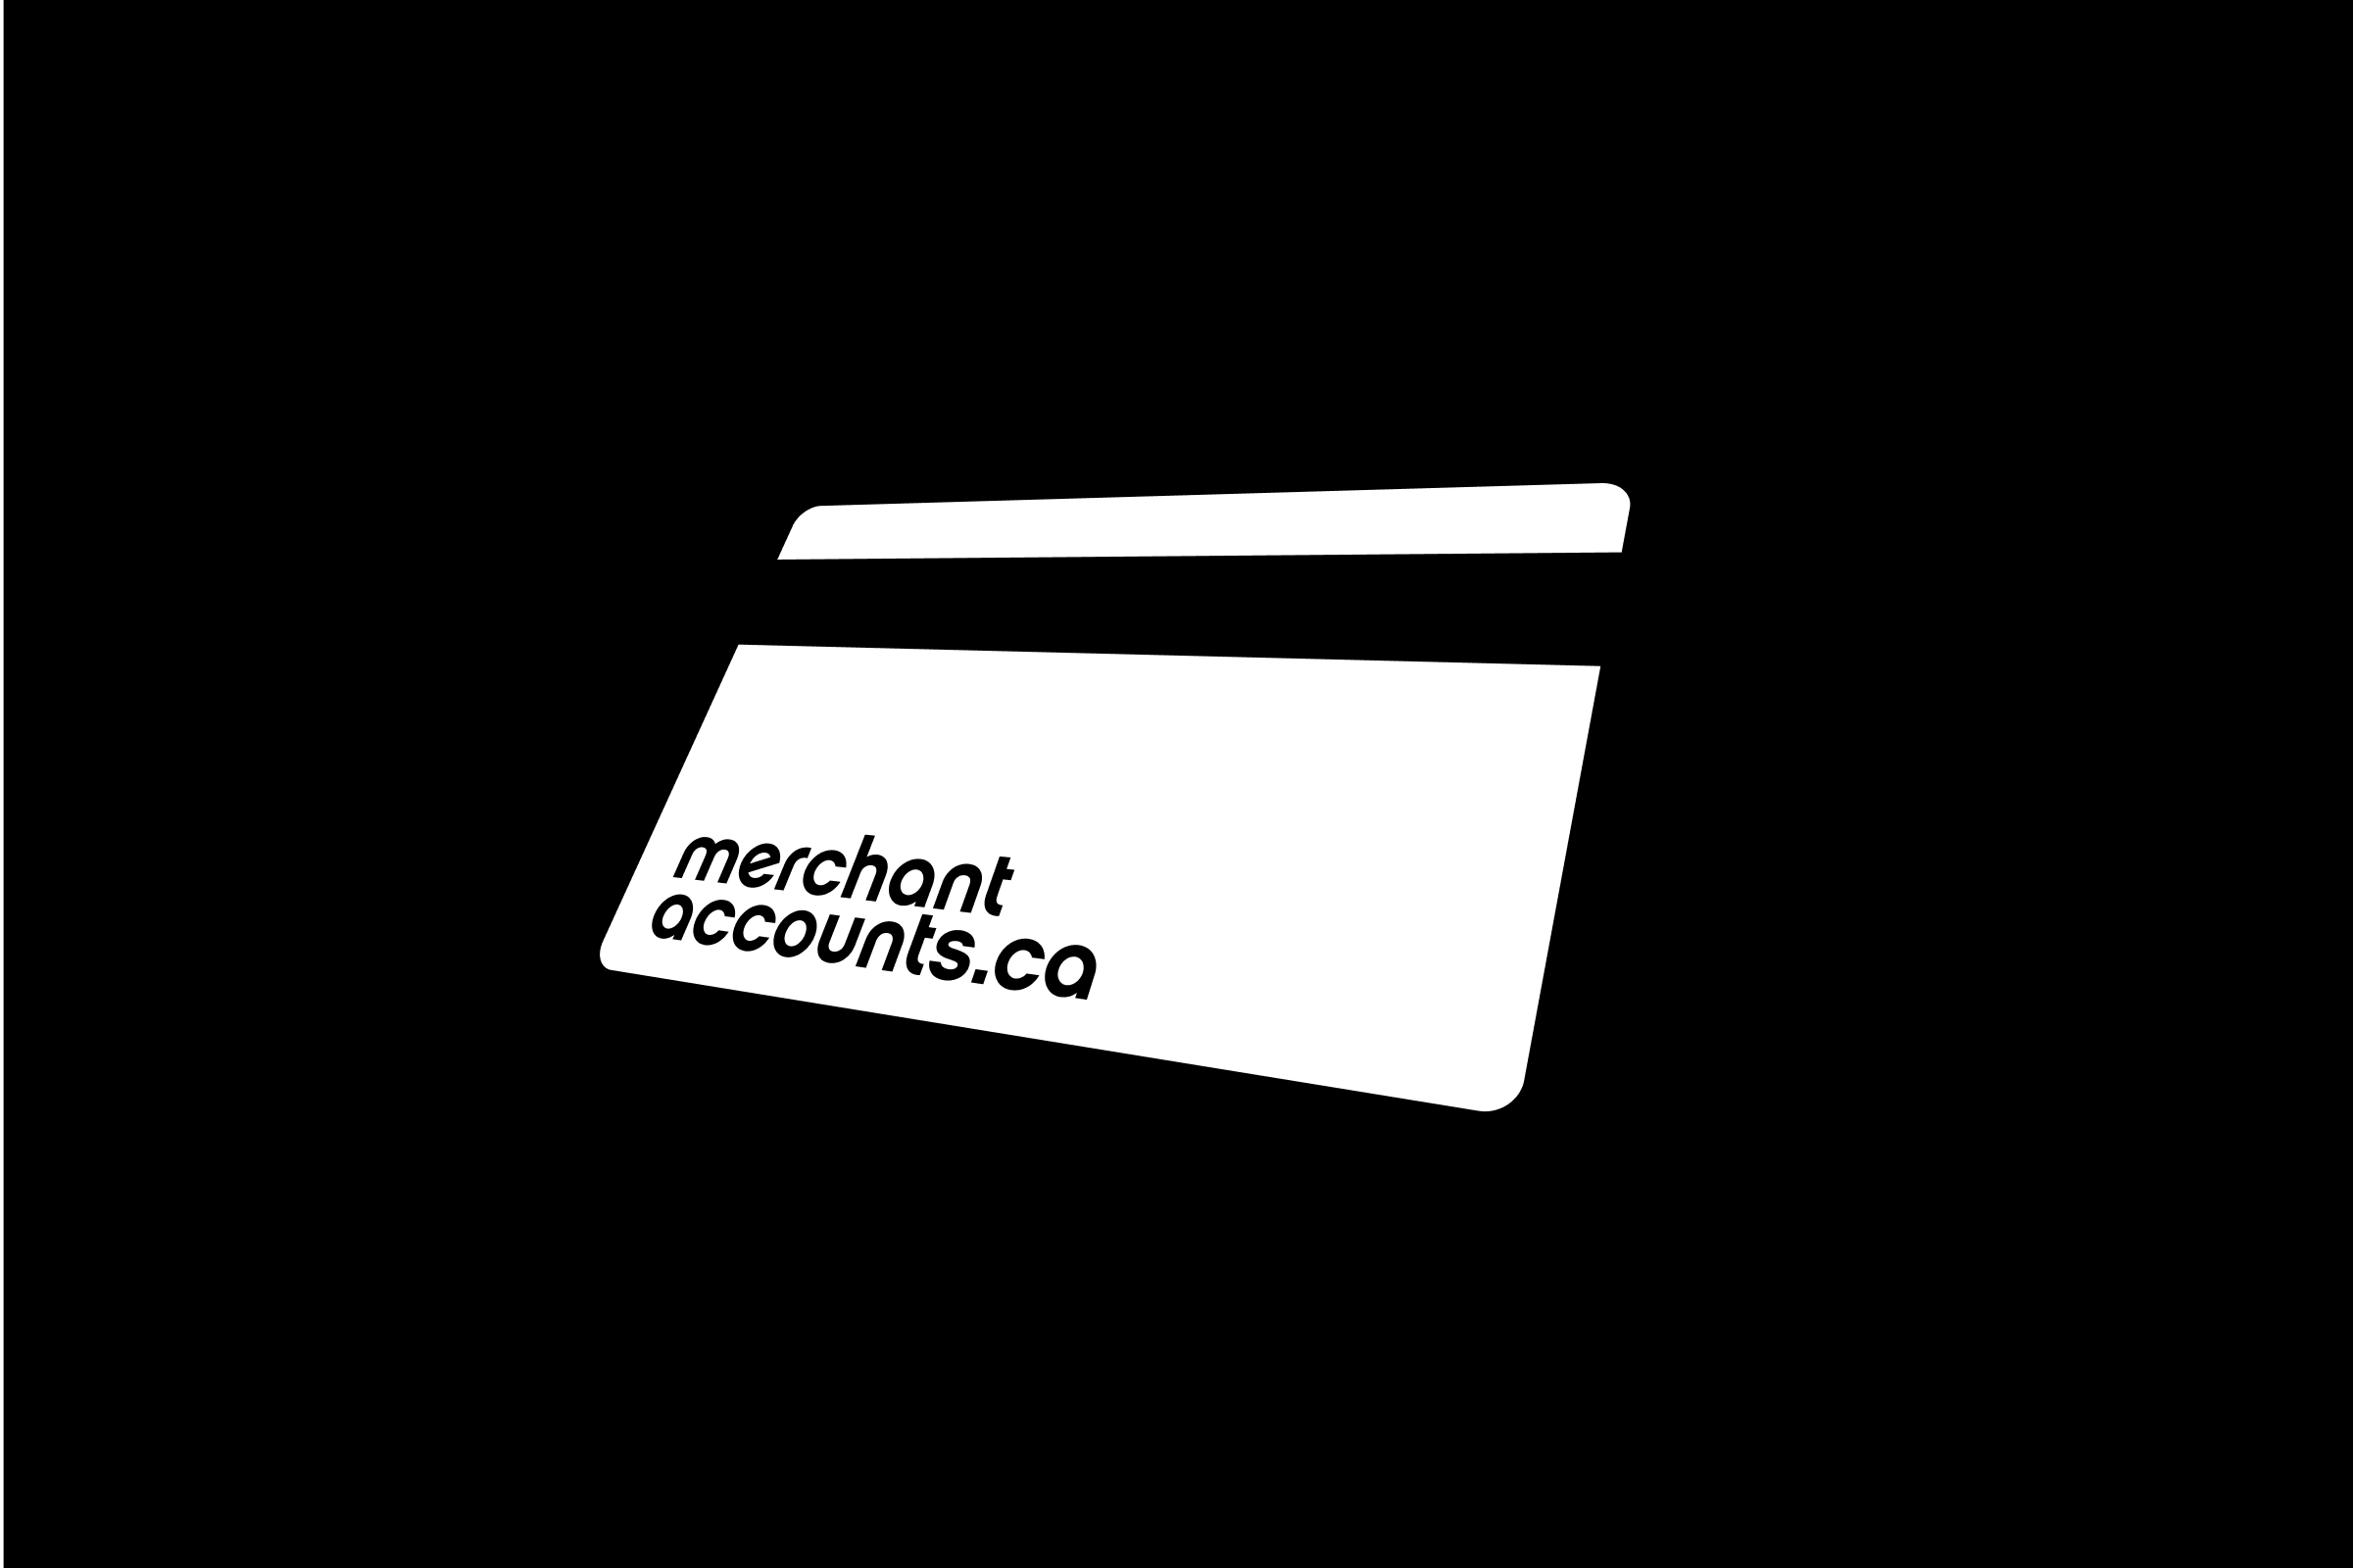 simon-p-coyle-branding-logo-design-2010-merchant-accounts